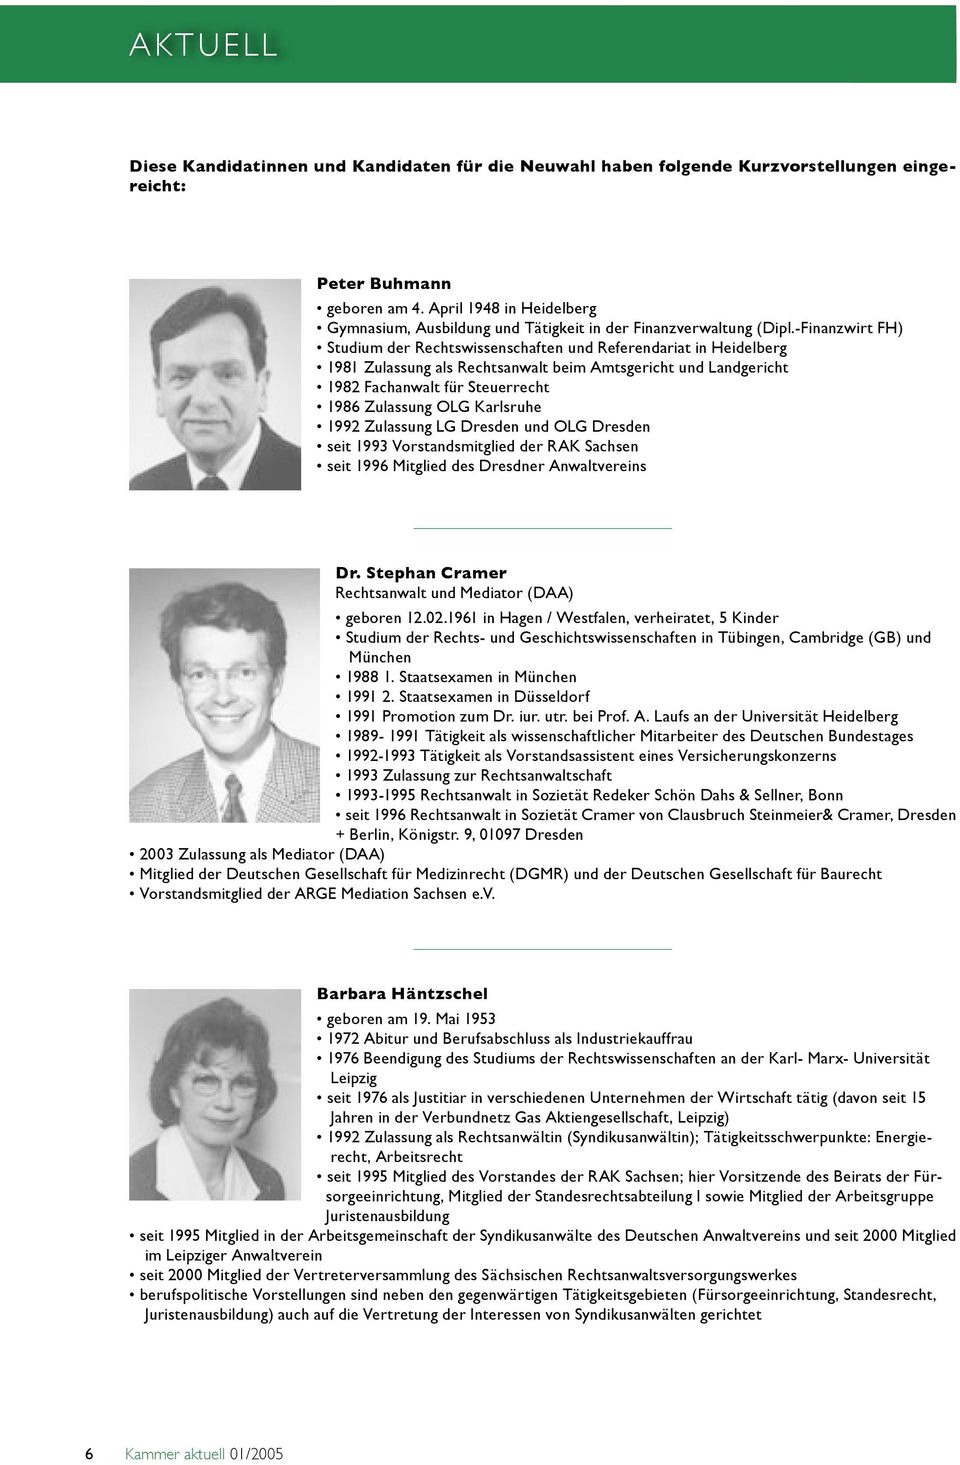 -Finanzwirt FH) Studium der Rechtswissenschaften und Referendariat in Heidelberg 1981 Zulassung als Rechtsanwalt beim Amtsgericht und Landgericht 1982 Fachanwalt für Steuerrecht 1986 Zulassung OLG